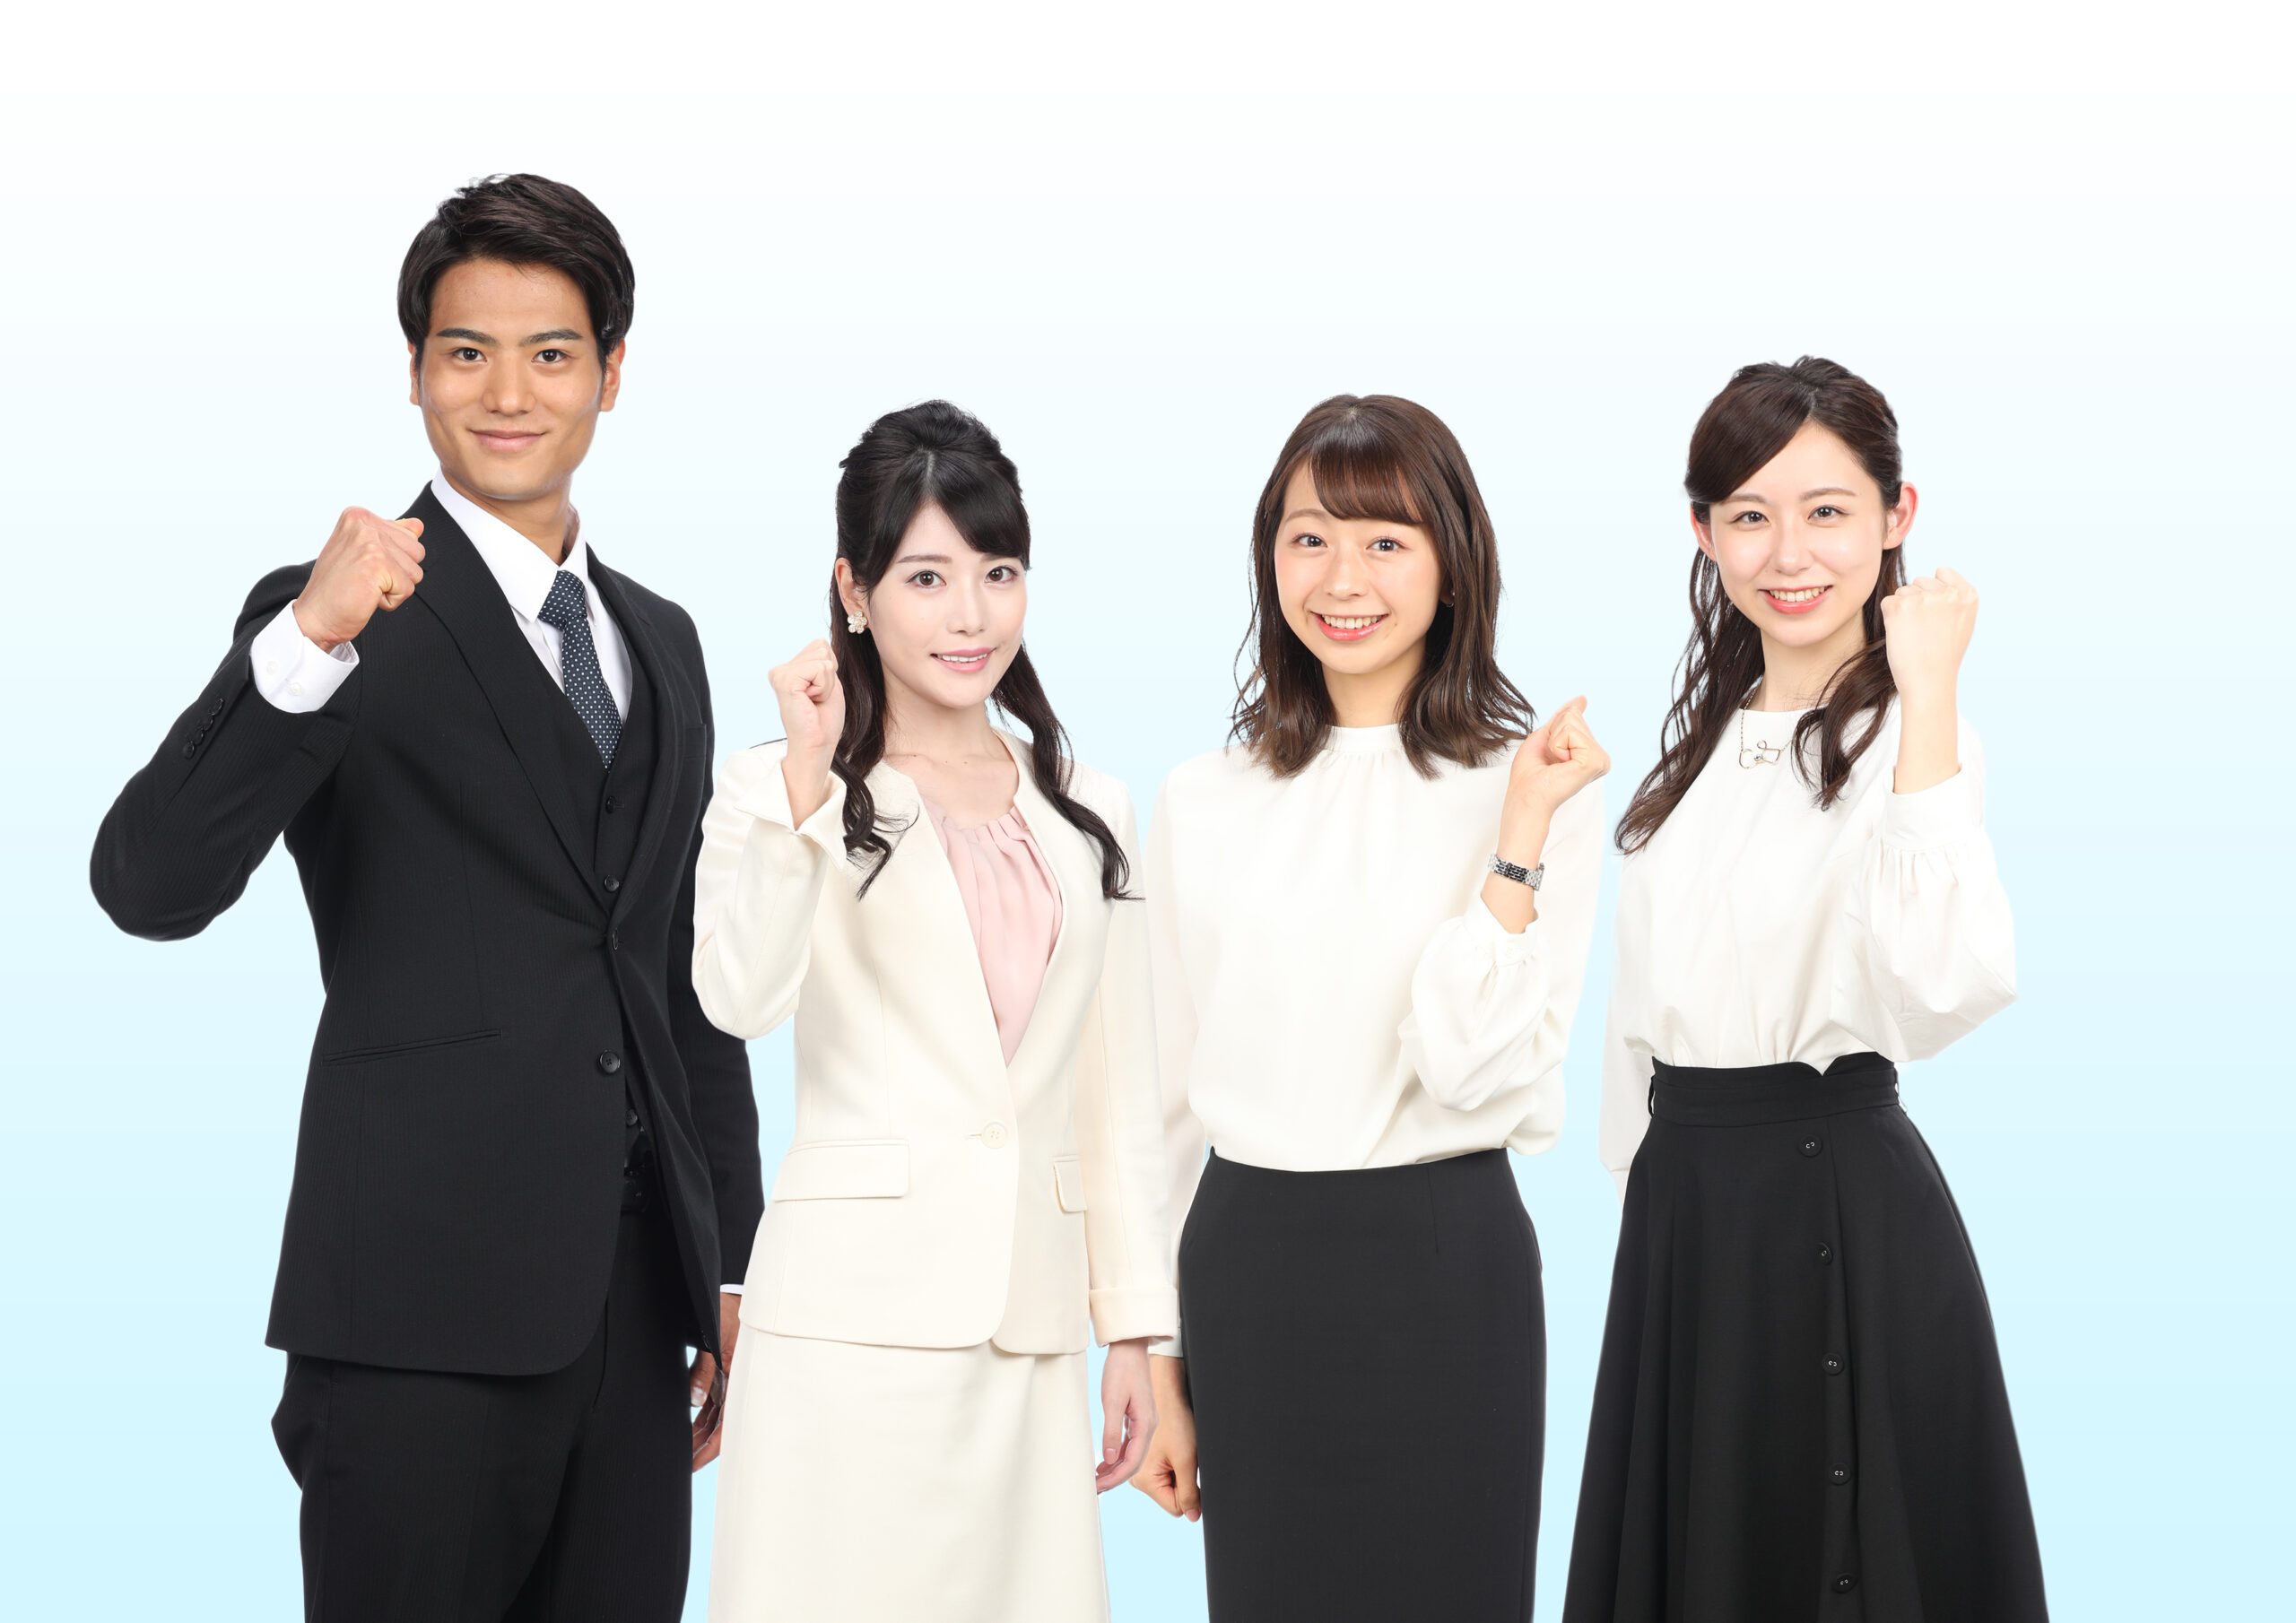 8 日本 テレビ アナウンサー 新人 2021 2020